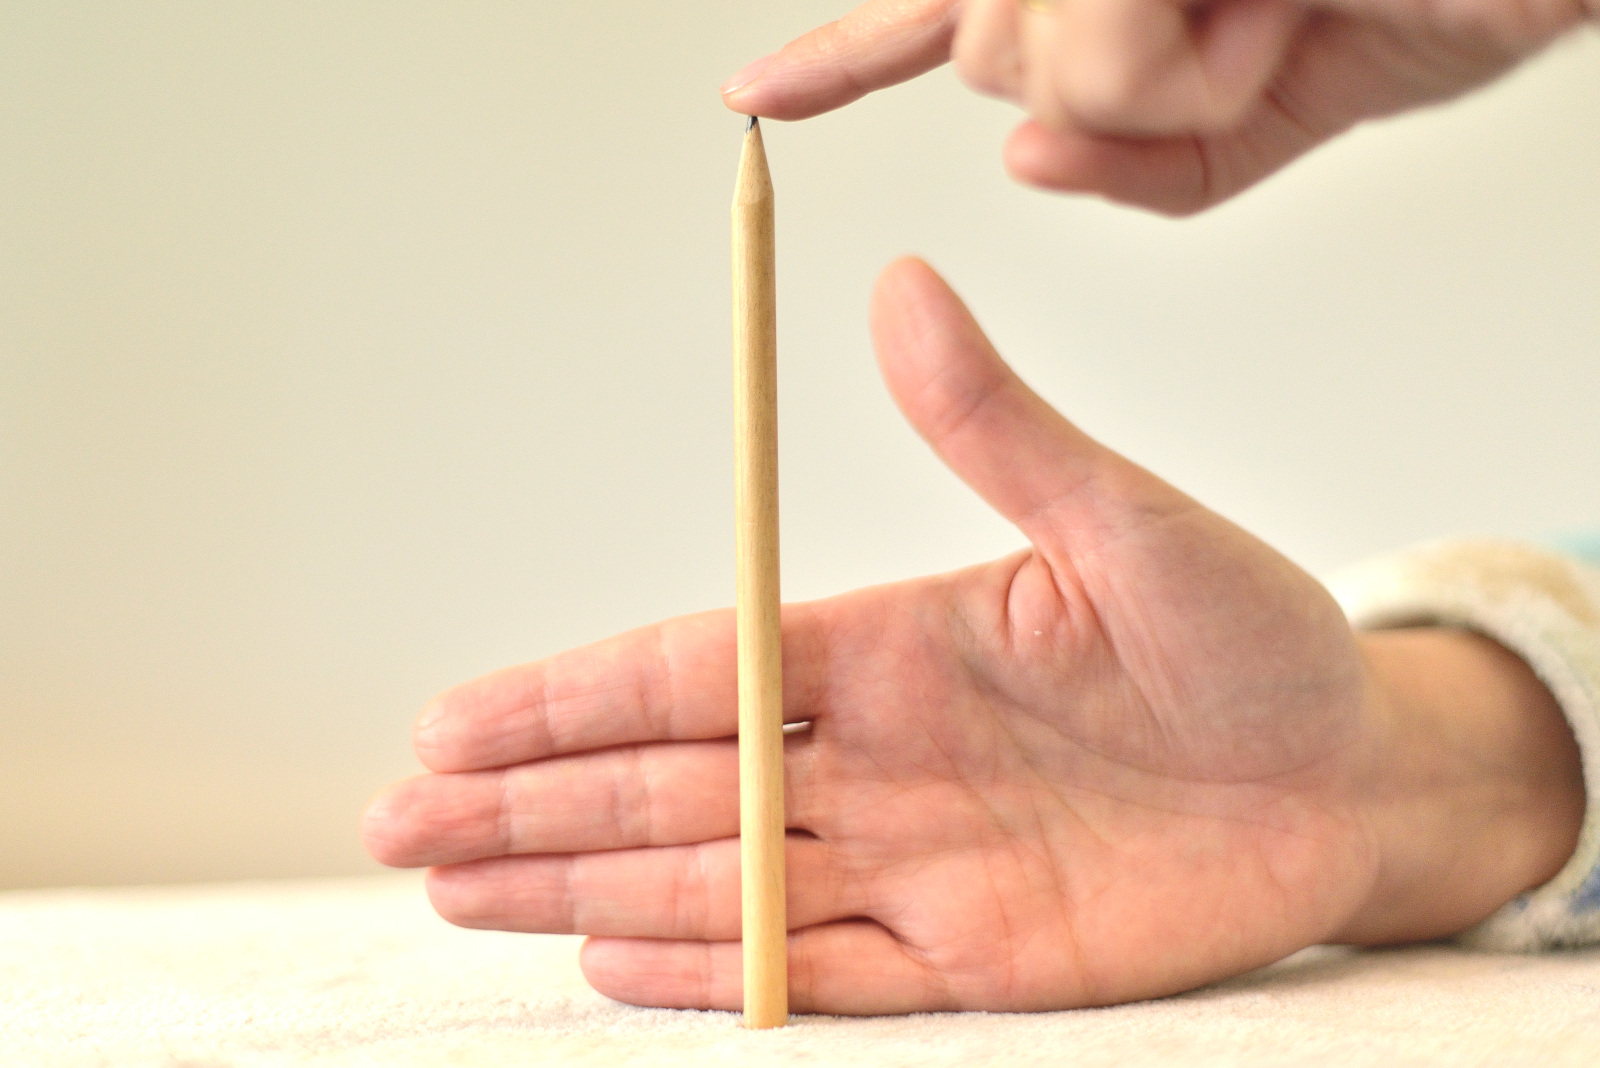 La imagen muestra un lápiz y una mano detrás, con cuatro dedos juntos, que está midiendo el lápiz